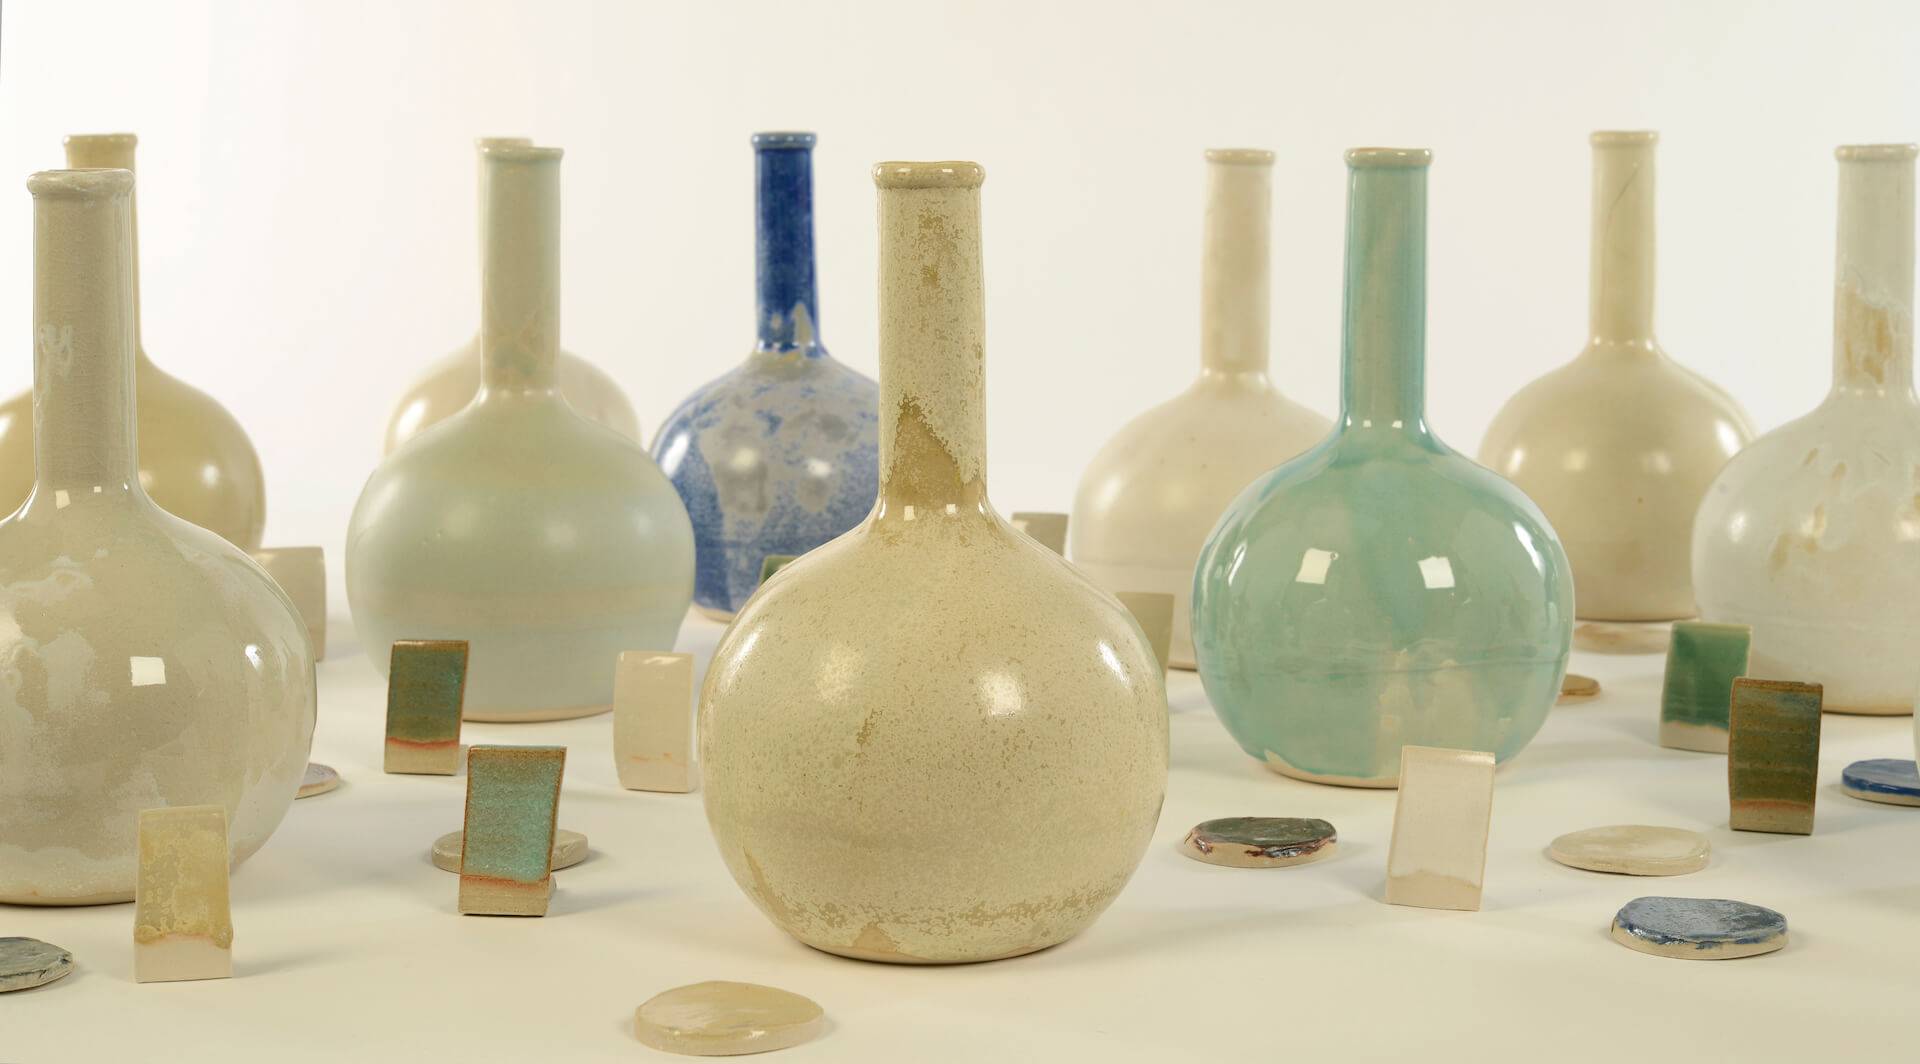 Ceramic vases in natural tones